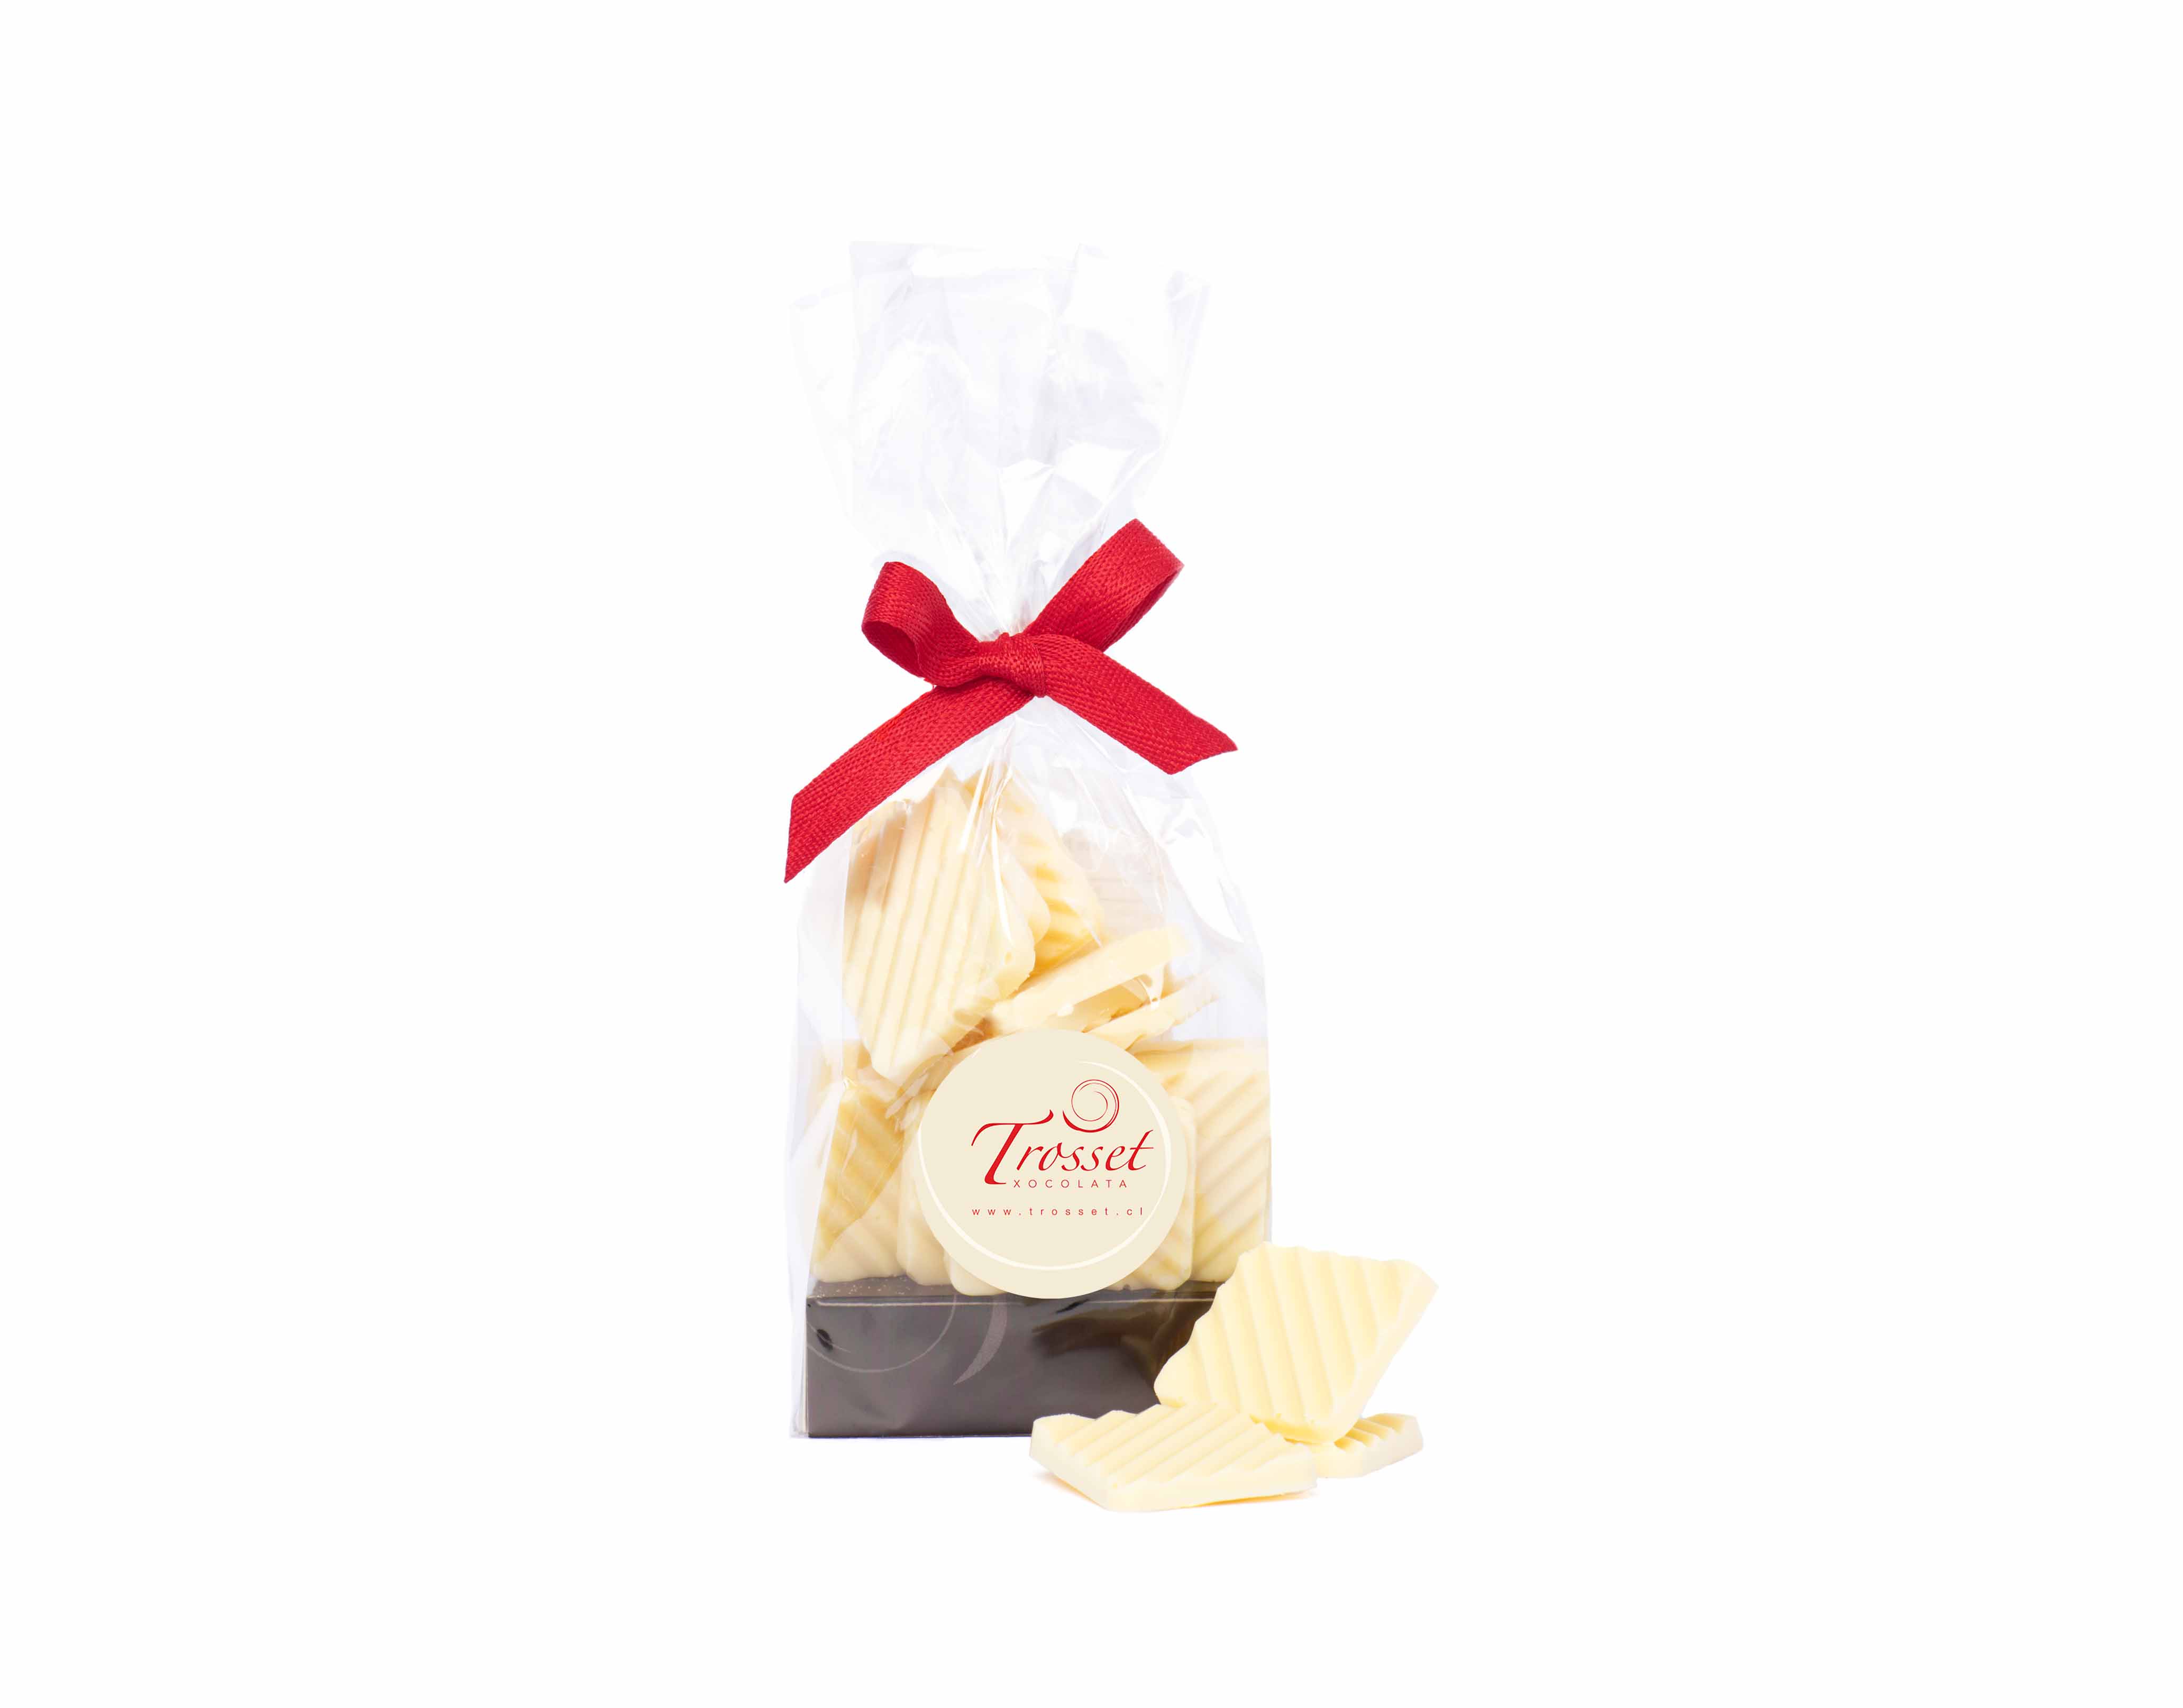 Tableta artesana de chocolate blanco sin azúcar: Nuestros productos de  Chocolates Sierra Nevada